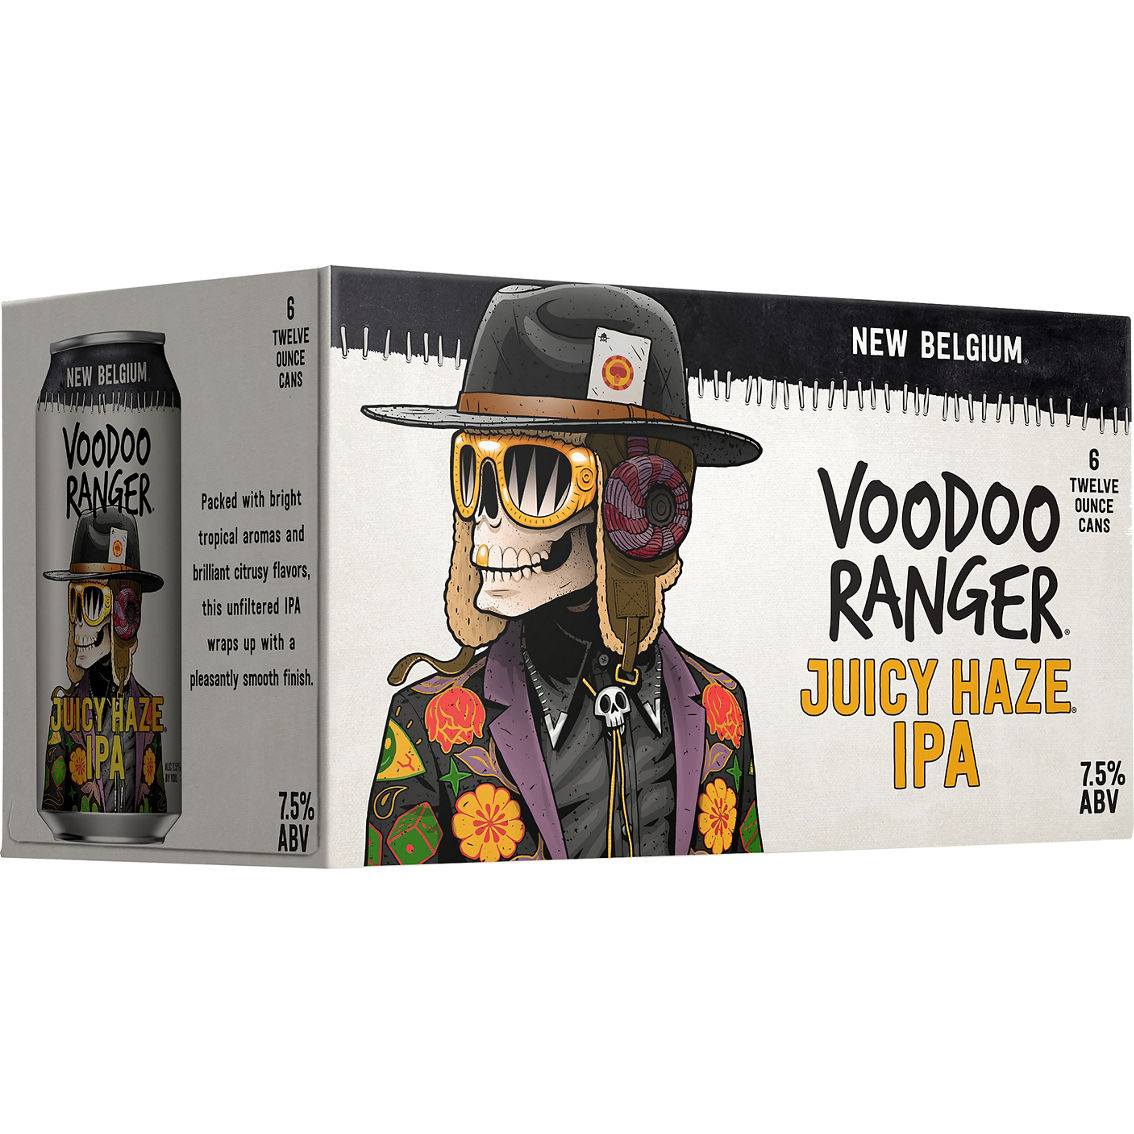 New Belgium Voodoo Ranger Juicy Haze IPA 12 oz Cans 6 pk.